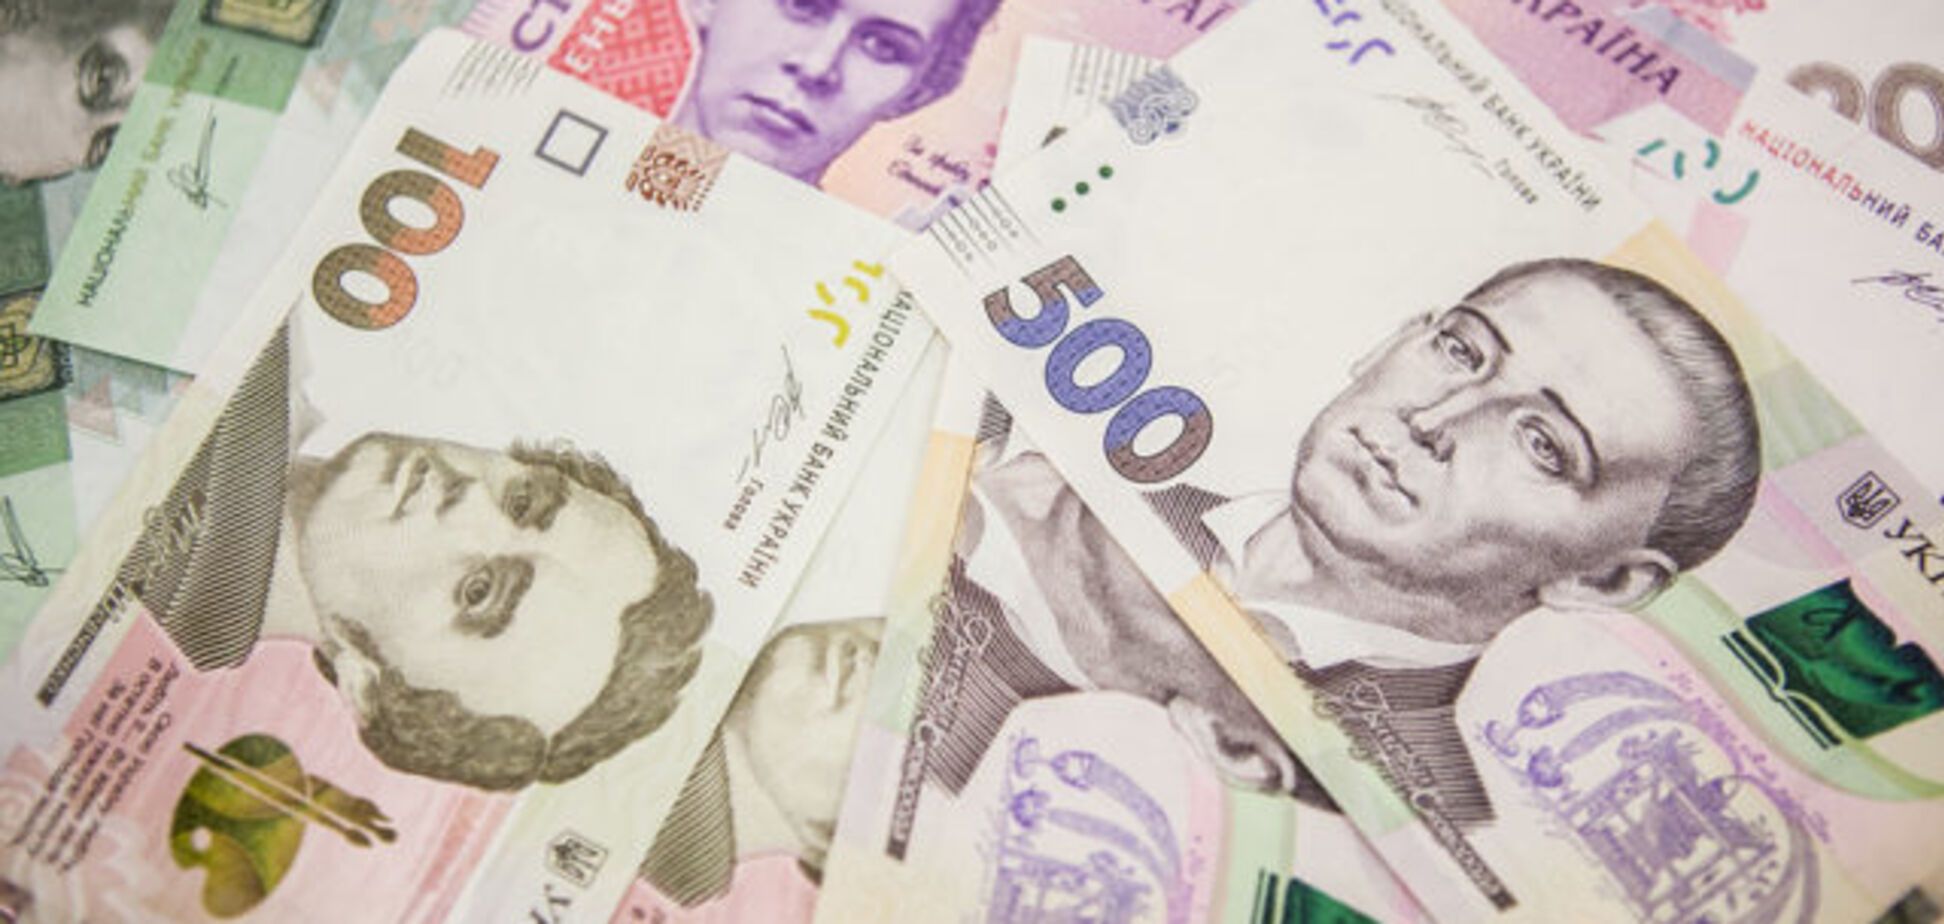 Фальшивками даже зарплату выдают: Украину заполонили поддельные деньги